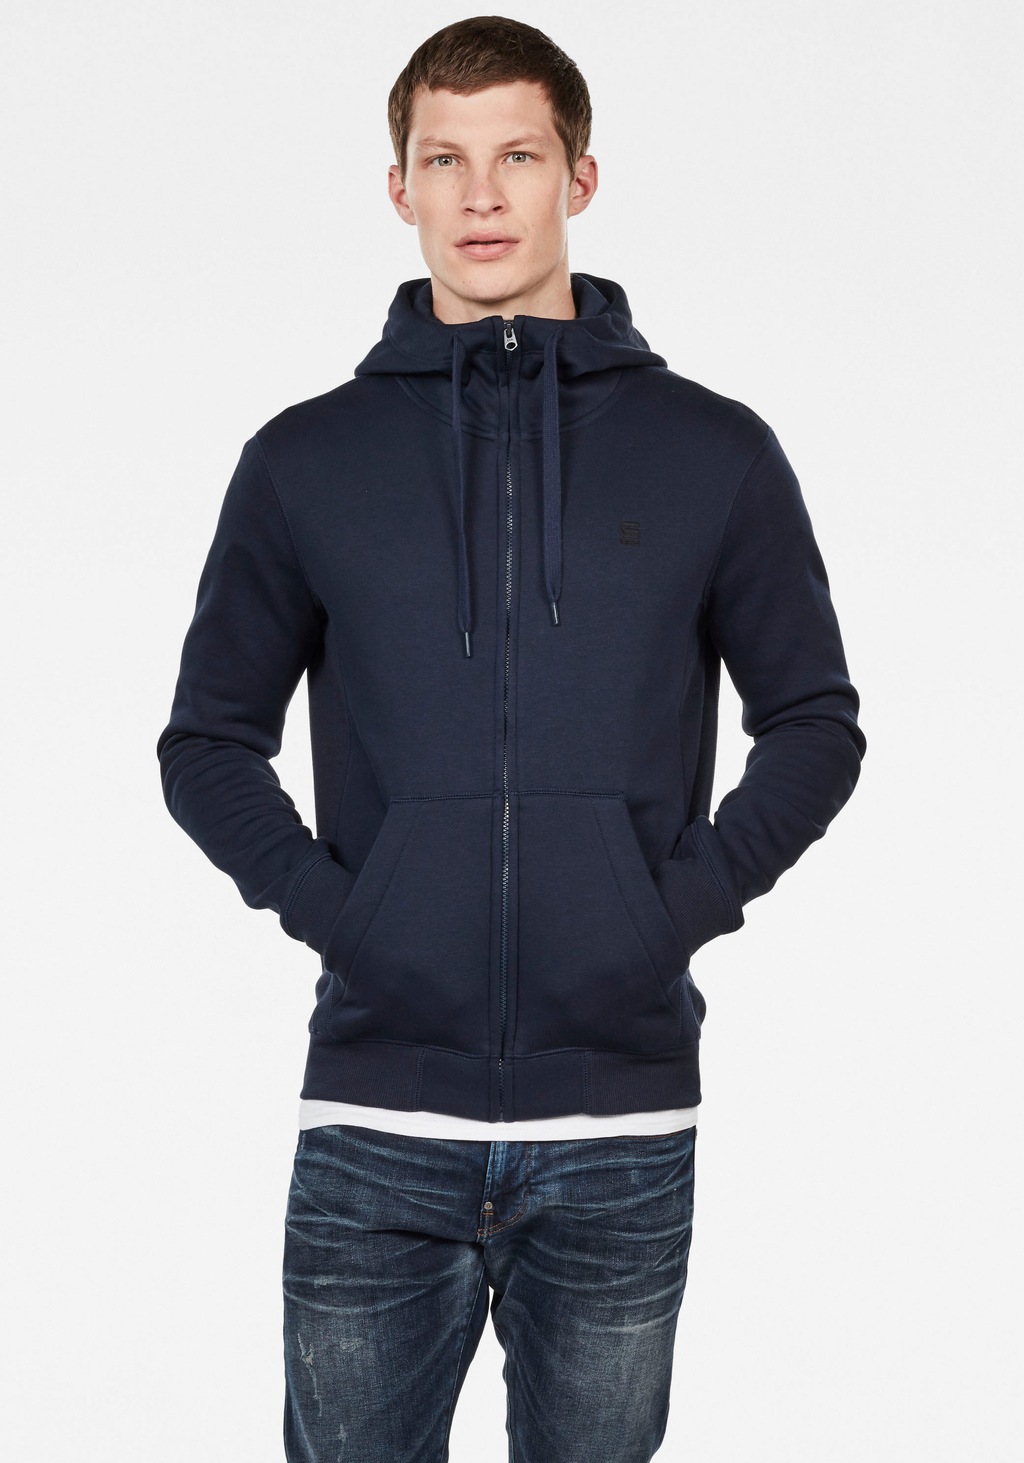 G-star Premium Core Sweatshirt Mit Reißverschluss 2XL Dark Black günstig online kaufen